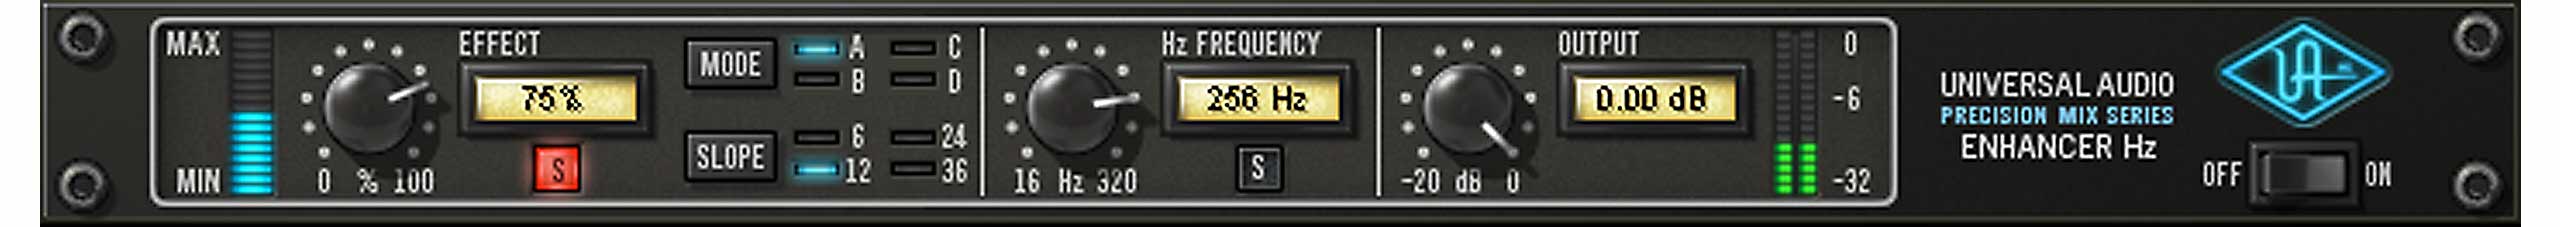 UA precisie Enhancer Hz